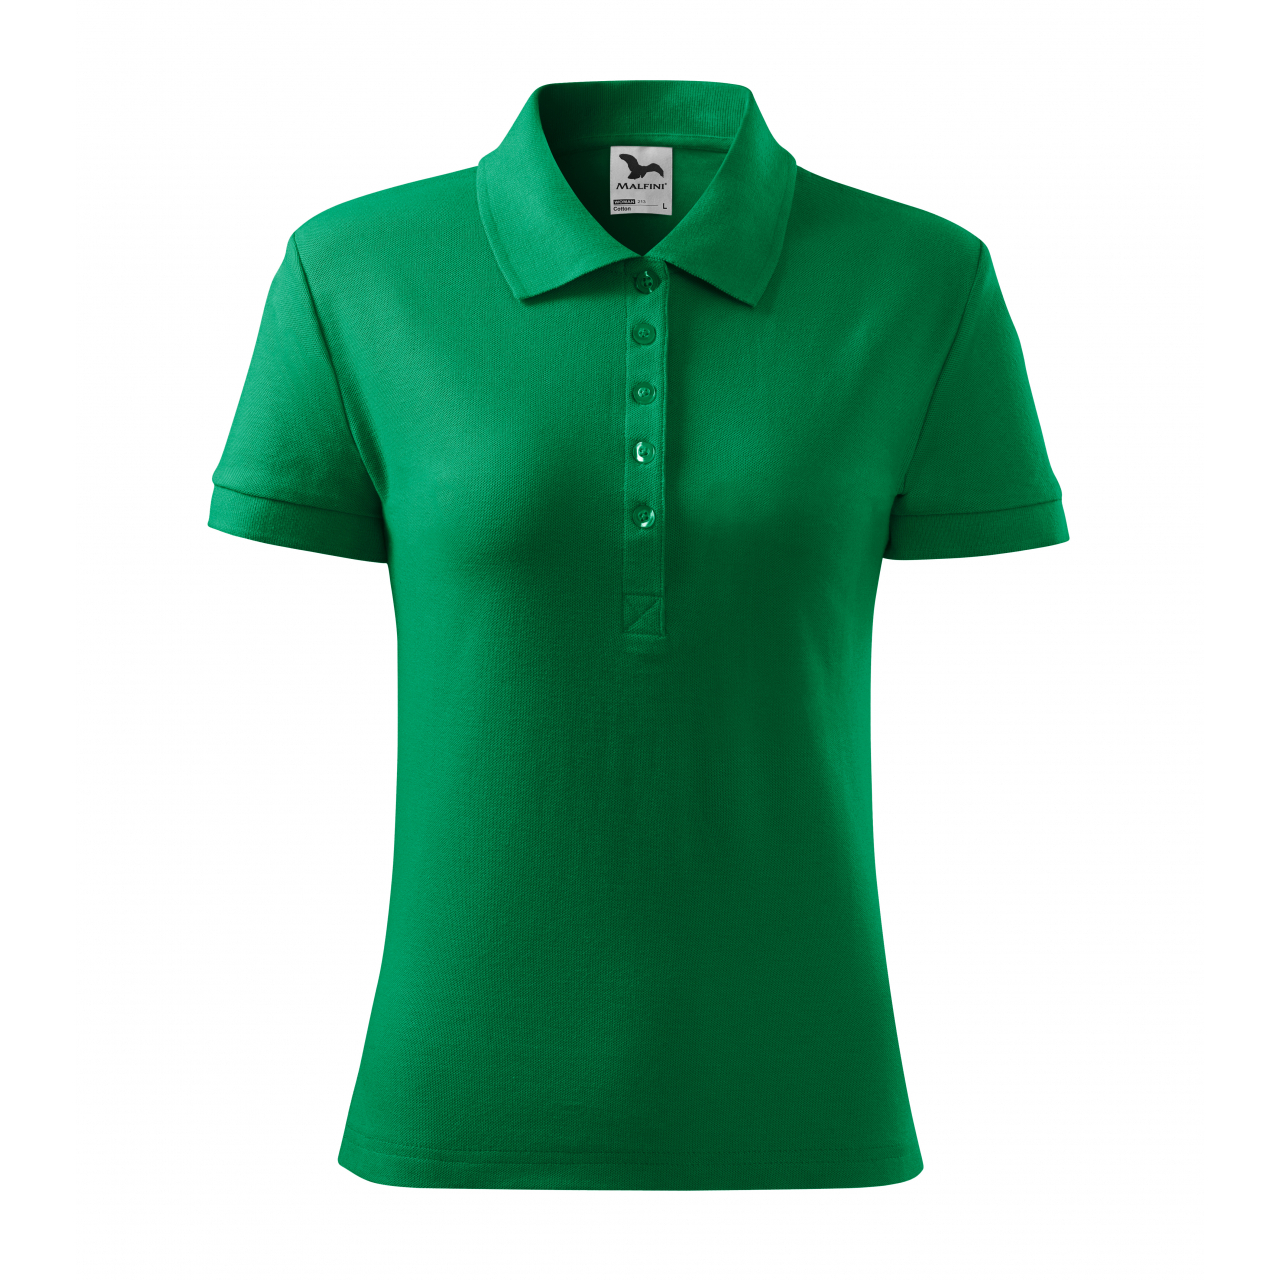 Polokošile dámská Malfini Cotton - středně zelená, XL